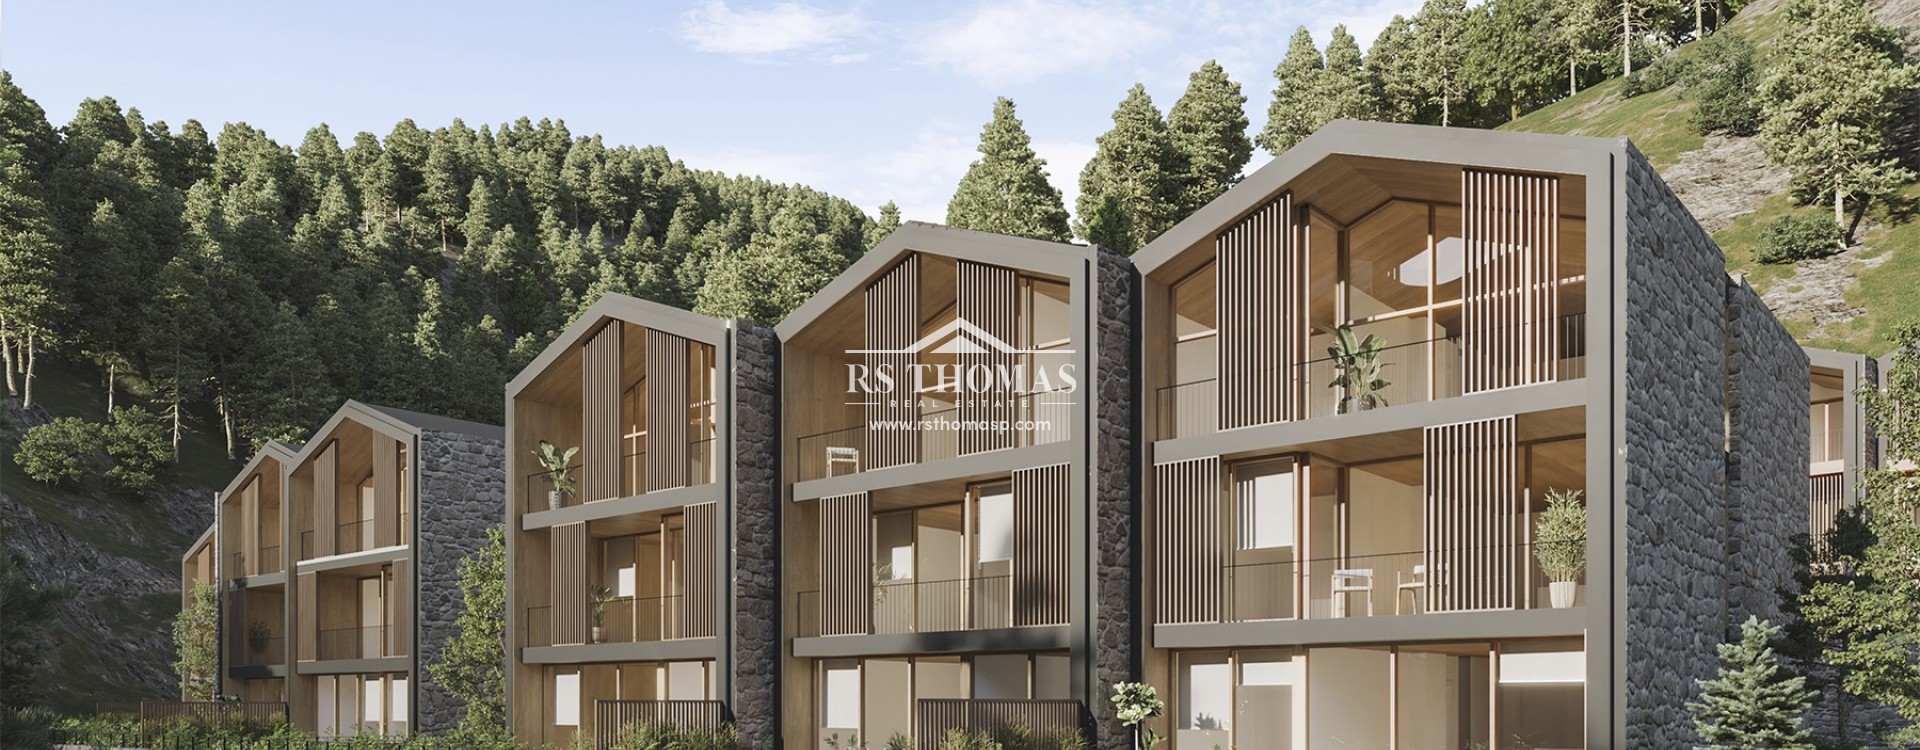 1550 Village Resort | RS Thomas Real Estate | RS432